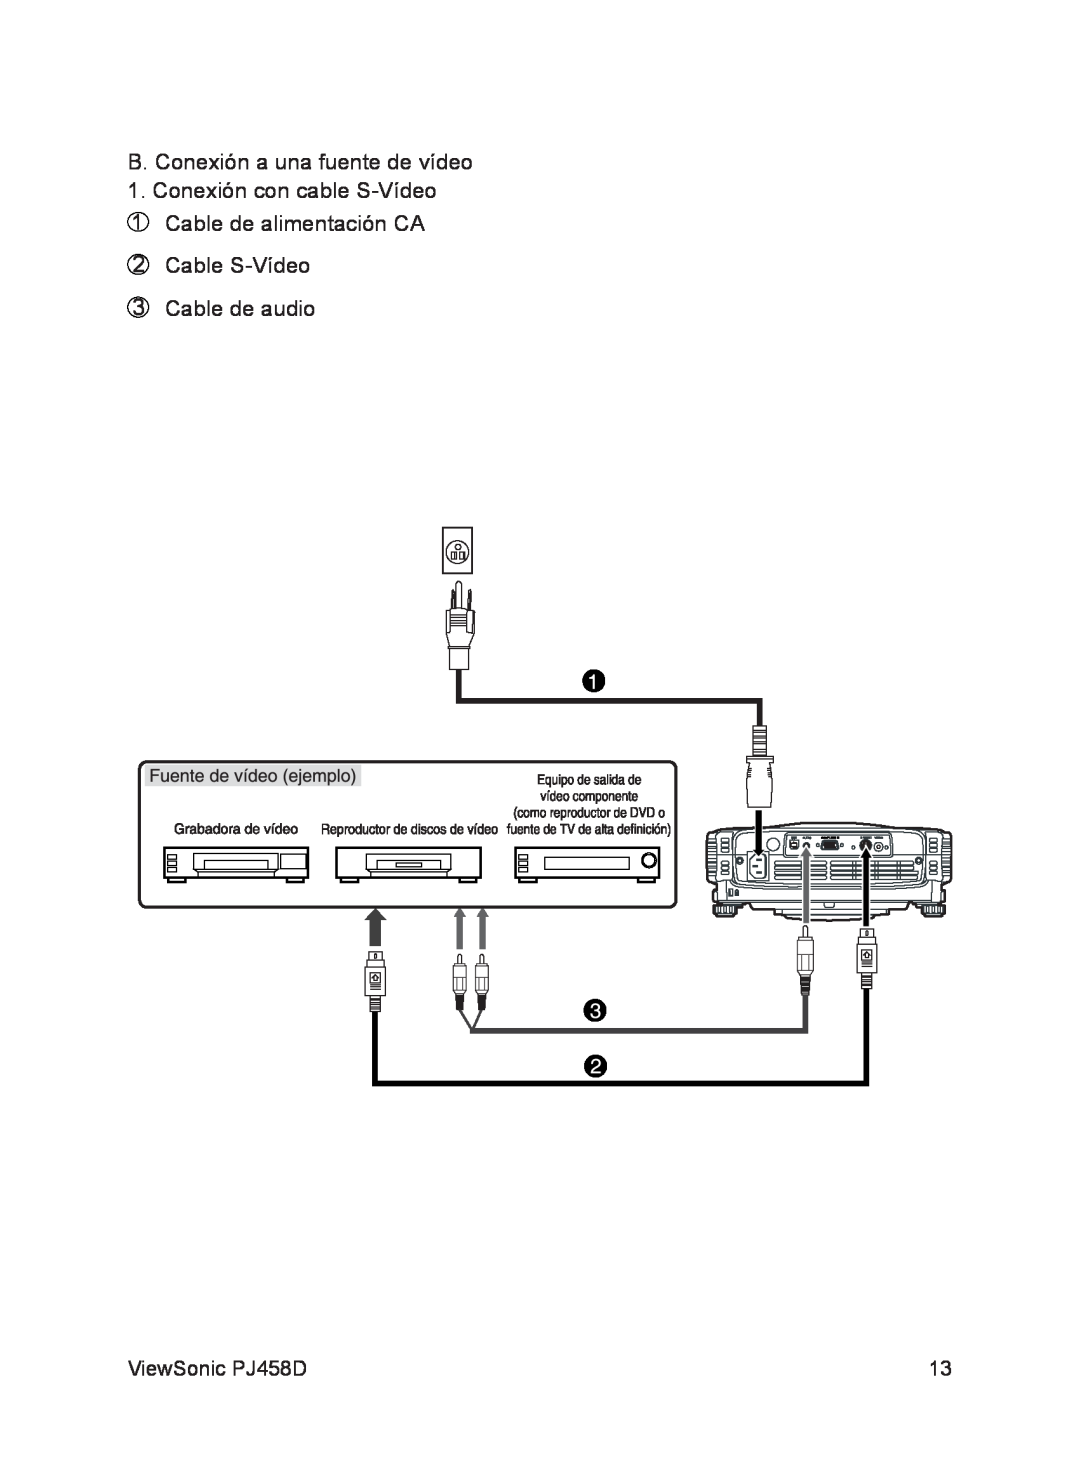 ViewSonic VS10872 manual B. Conexión a una fuente de vídeo, Cable S-Vídeo Cable de audio, ViewSonic PJ458D 